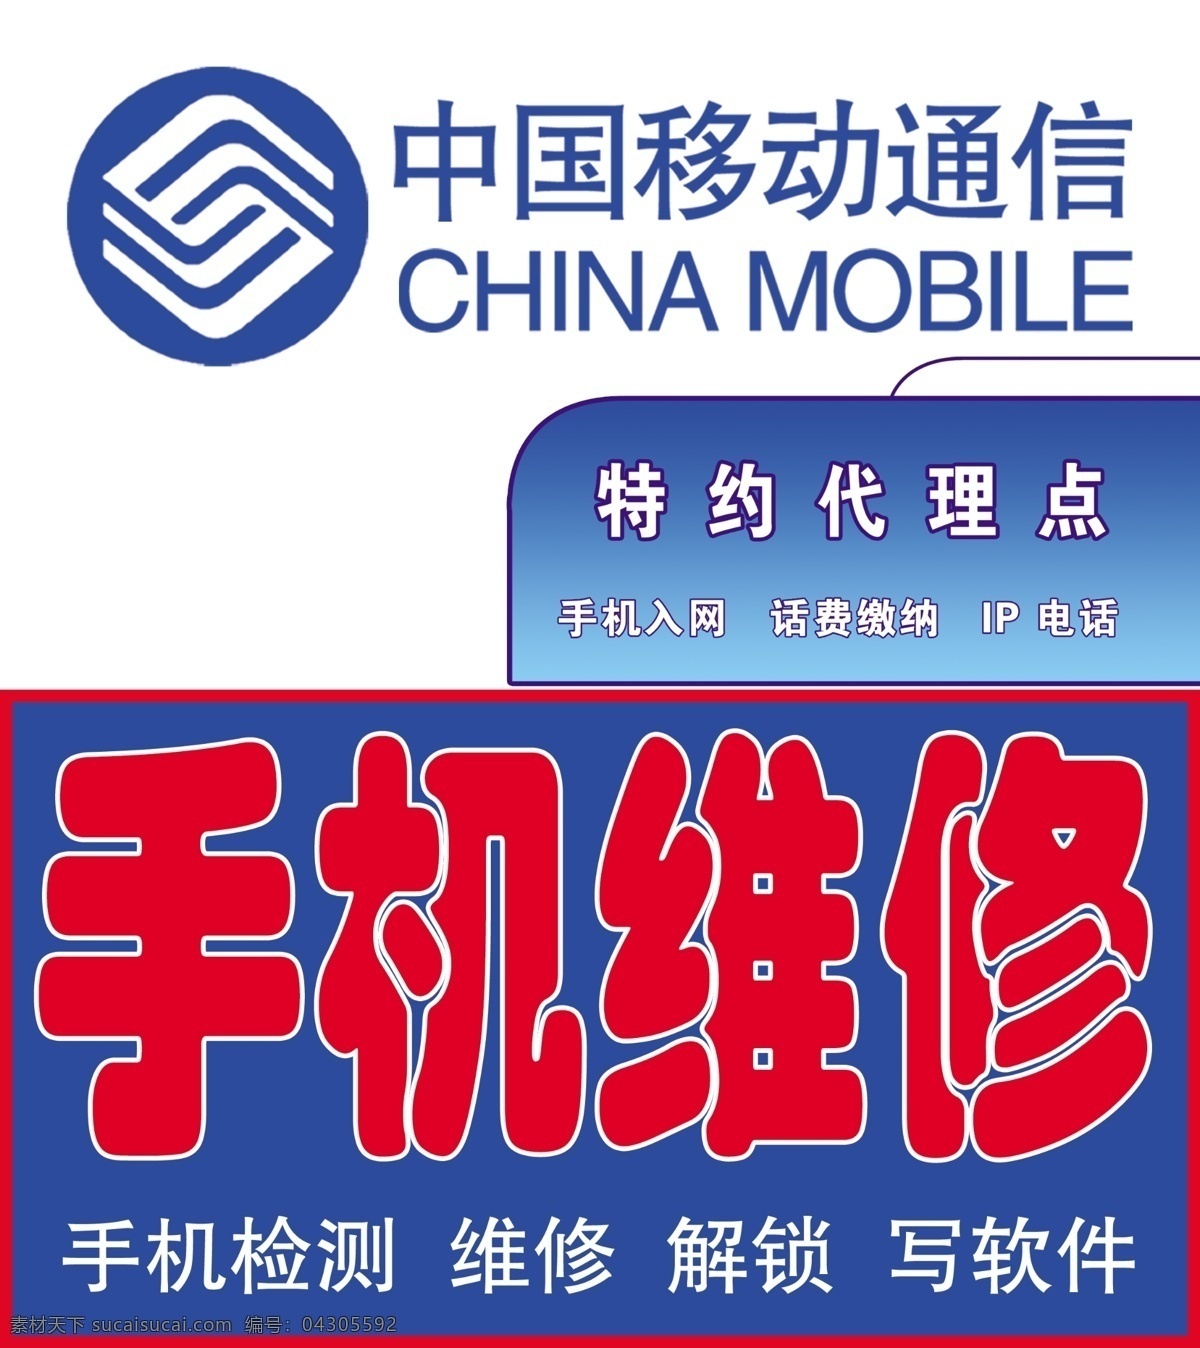 阳光艺术教育 手机维修 中国移动通信 特约代理点